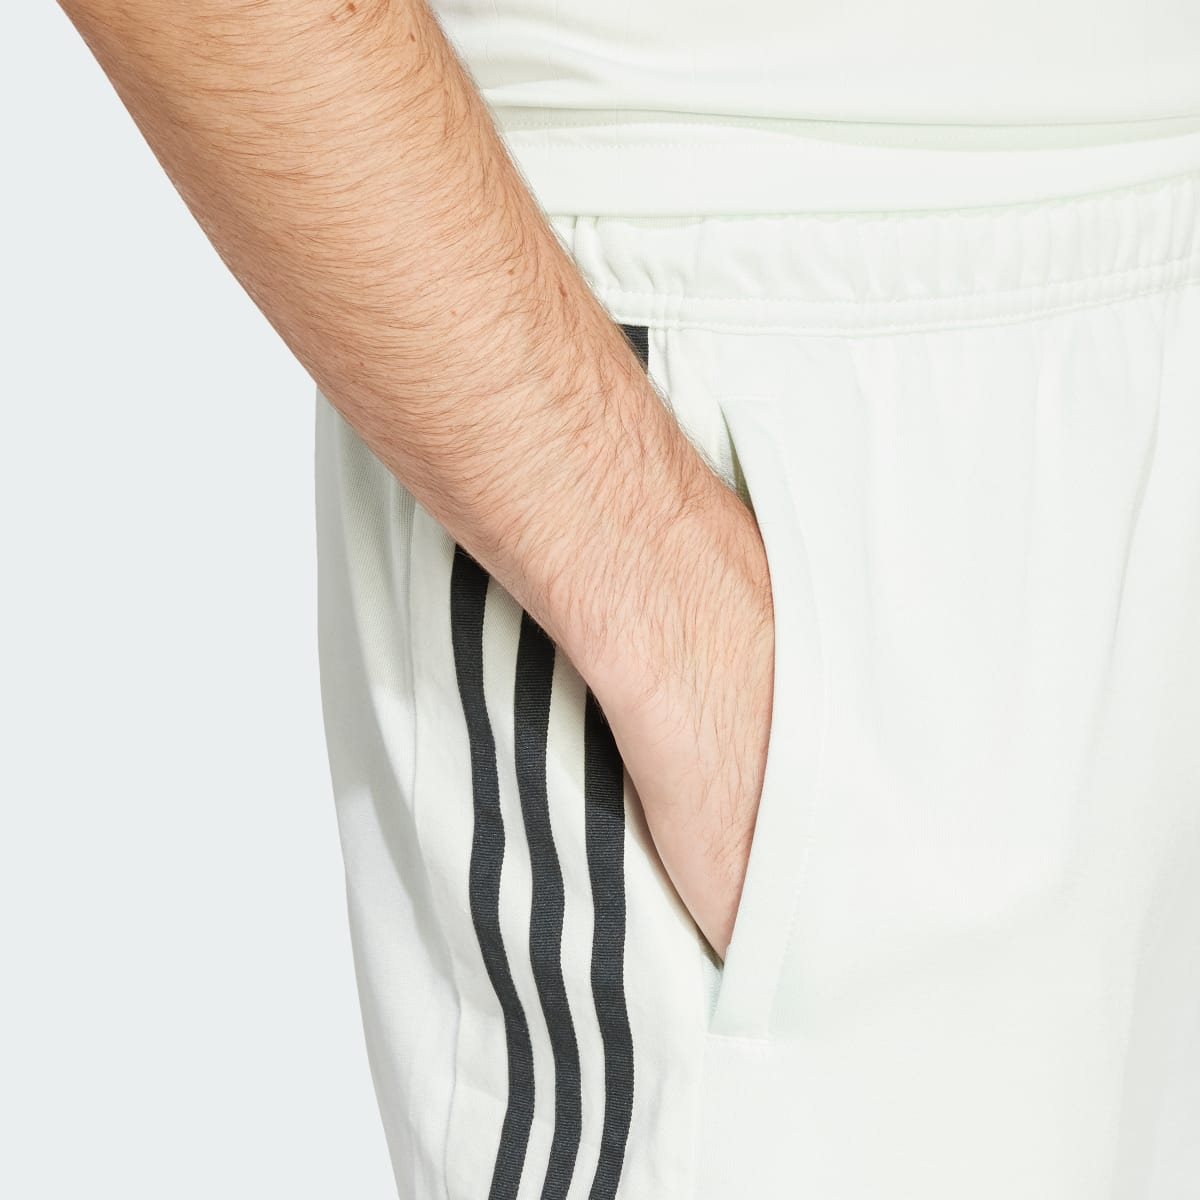 Adidas Tiro Shorts. 5